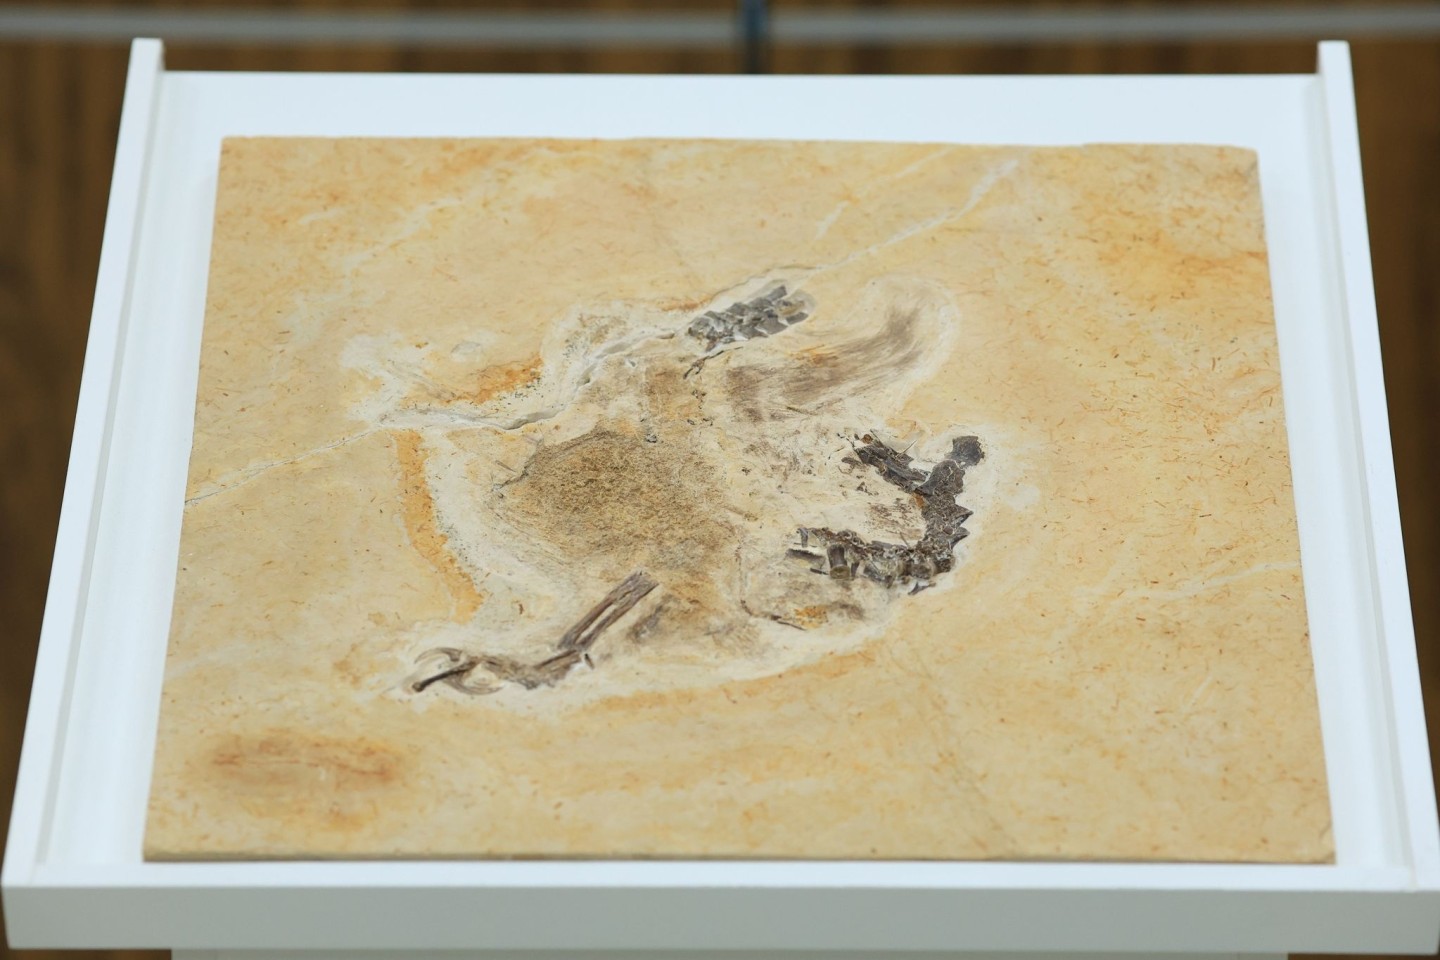 Das Dinosaurier-Fossil des Ubirajara jubatus: Der Saurier stammt aus der Kreidezeit und lebte vor etwa 110 bis 115 Millionen Jahren.